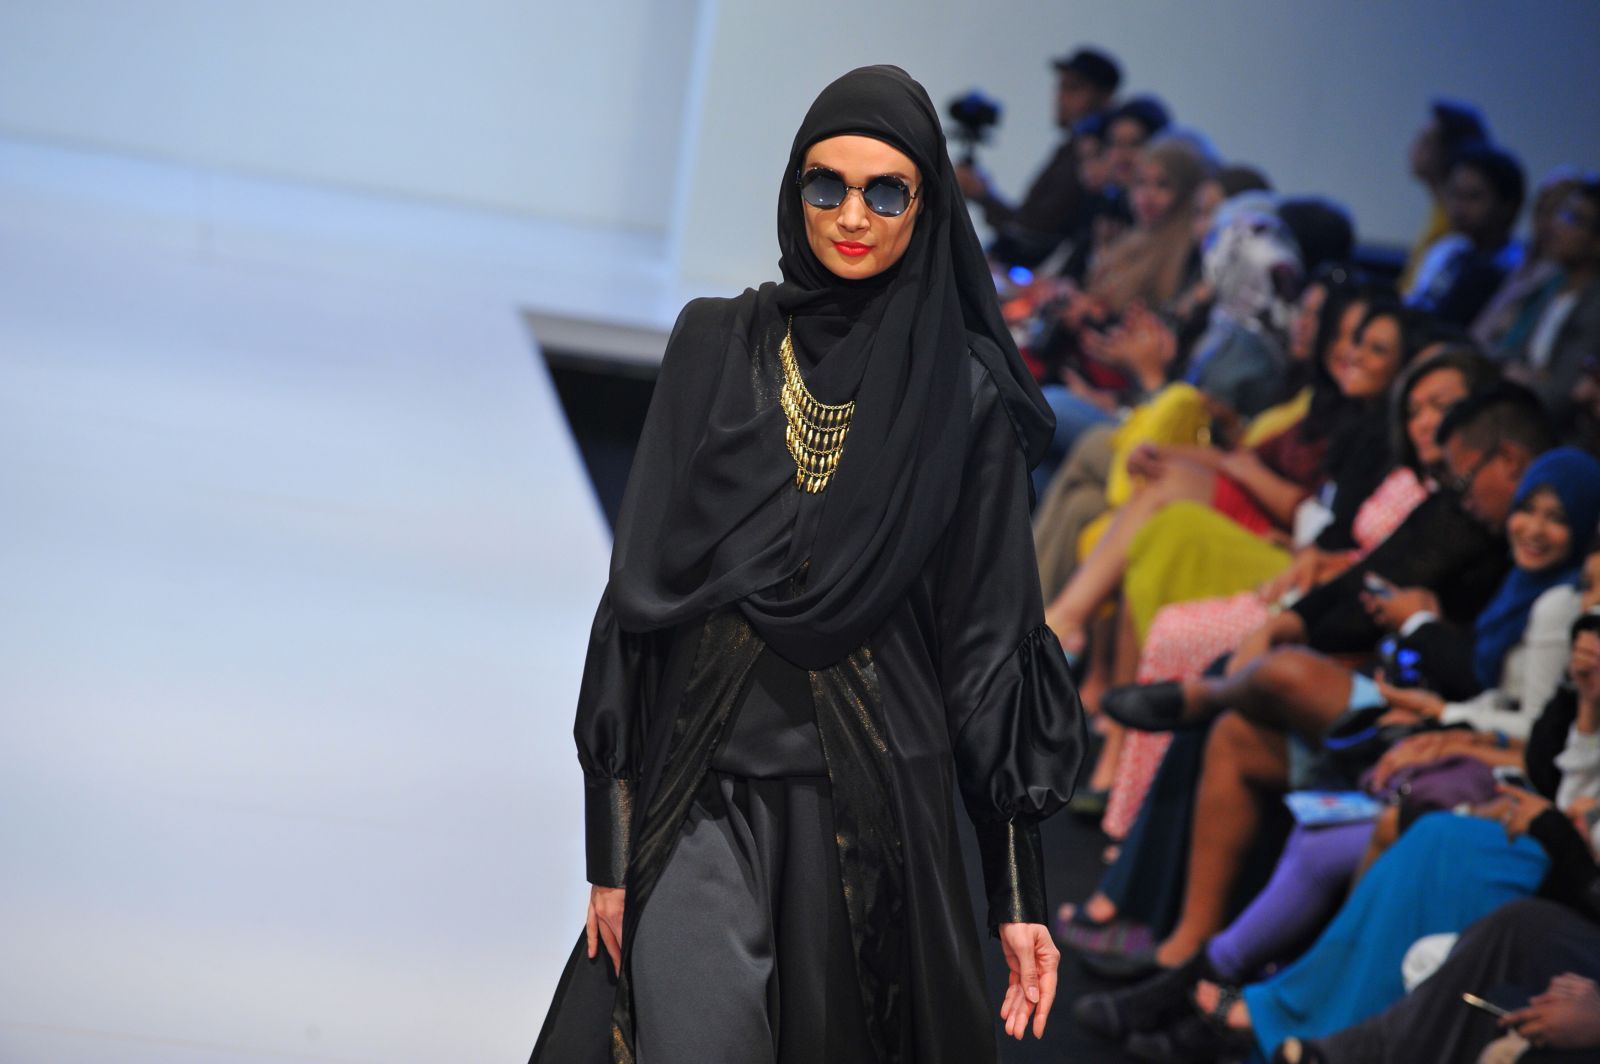 الحجاب كأداة زينة. عرض أزياء في إطار مهرجان أزياء إسلامي في أسبوع الموضة في كوالالمبور، ماليزيا (AFP)